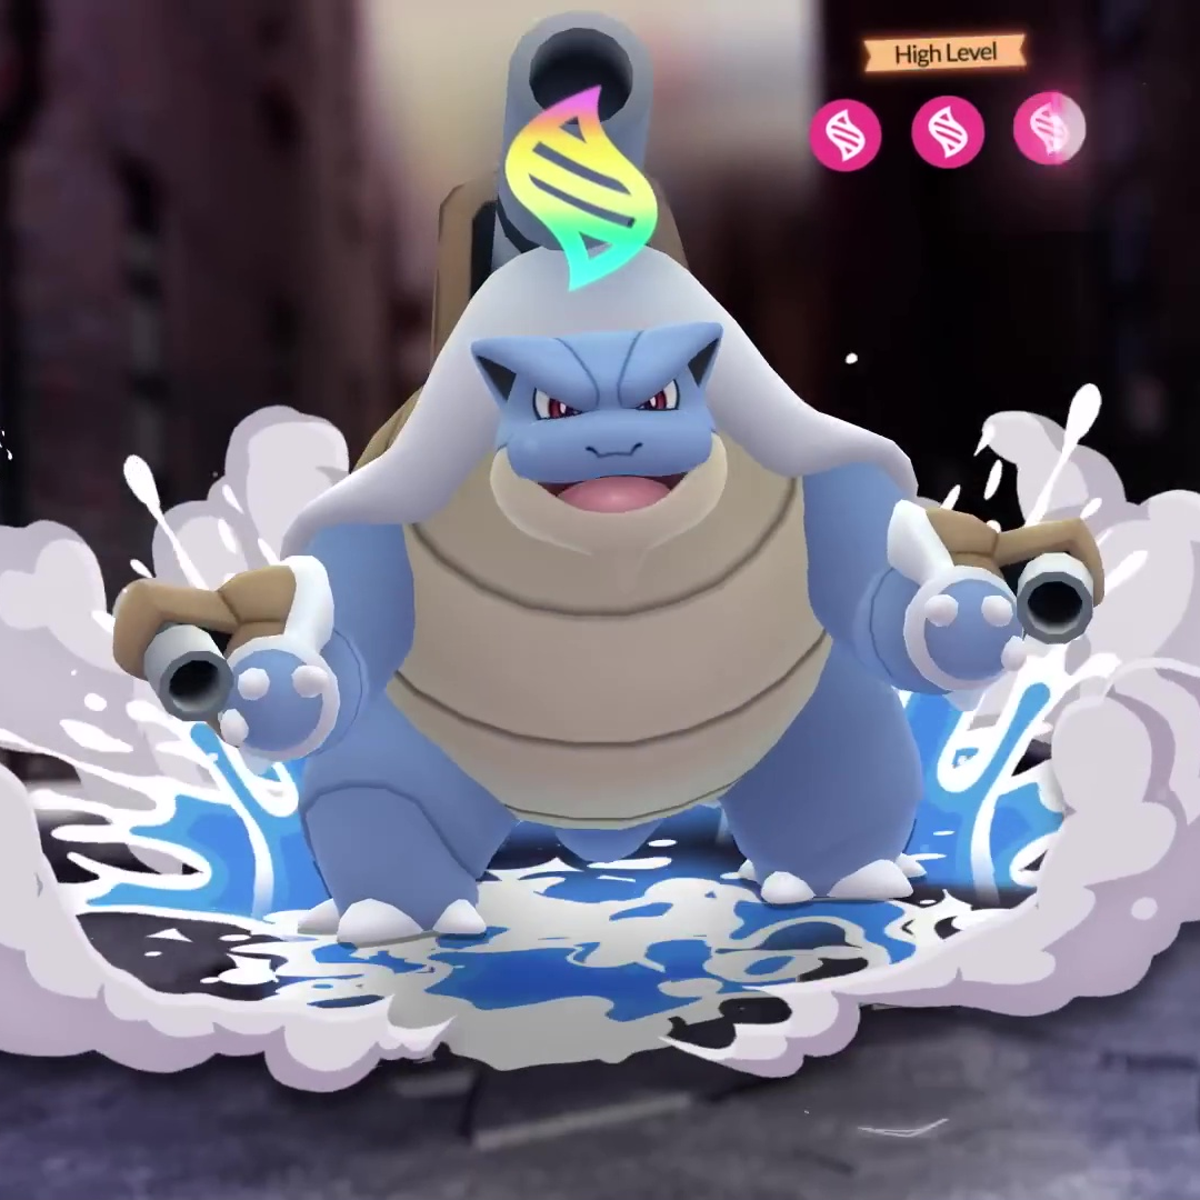 Pokémon Go acrescenta Mega Evoluções poderosas no jogo - Olhar Digital